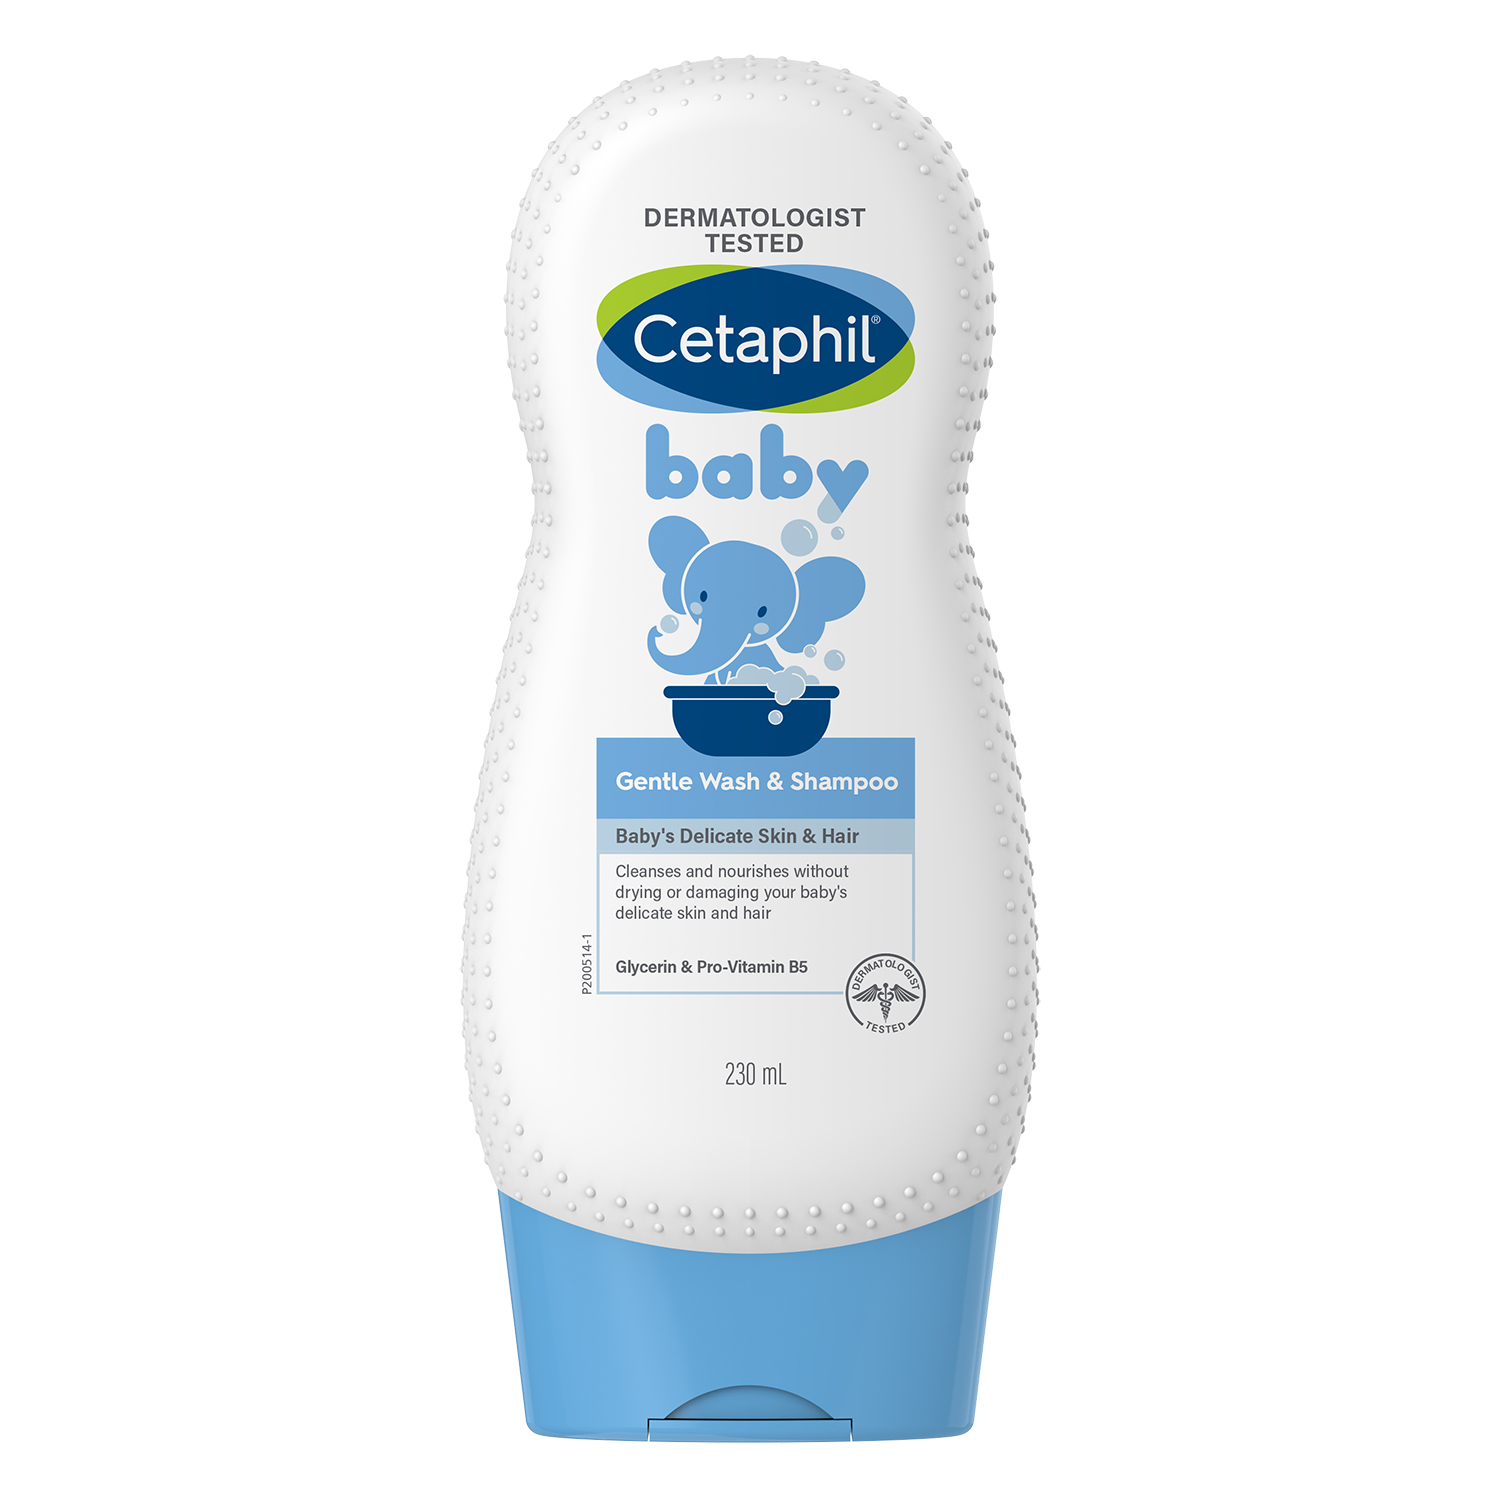 Sữa tắm gội toàn thân Cetaphil Baby 2 In 1 (230ml) bao bì mới